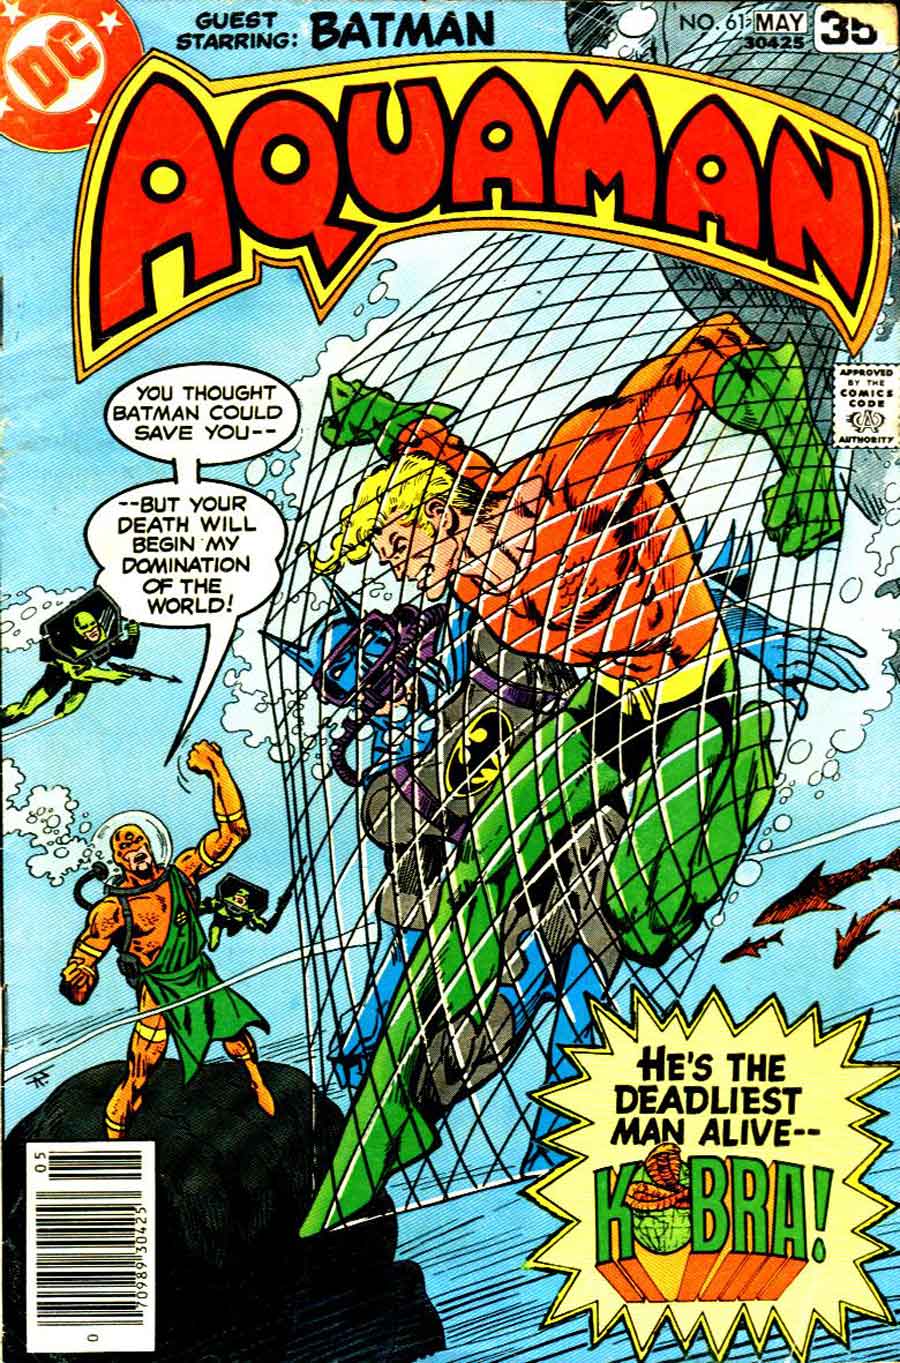 Aquaman v1 #61 dc 1970s bronze age comic book cover art